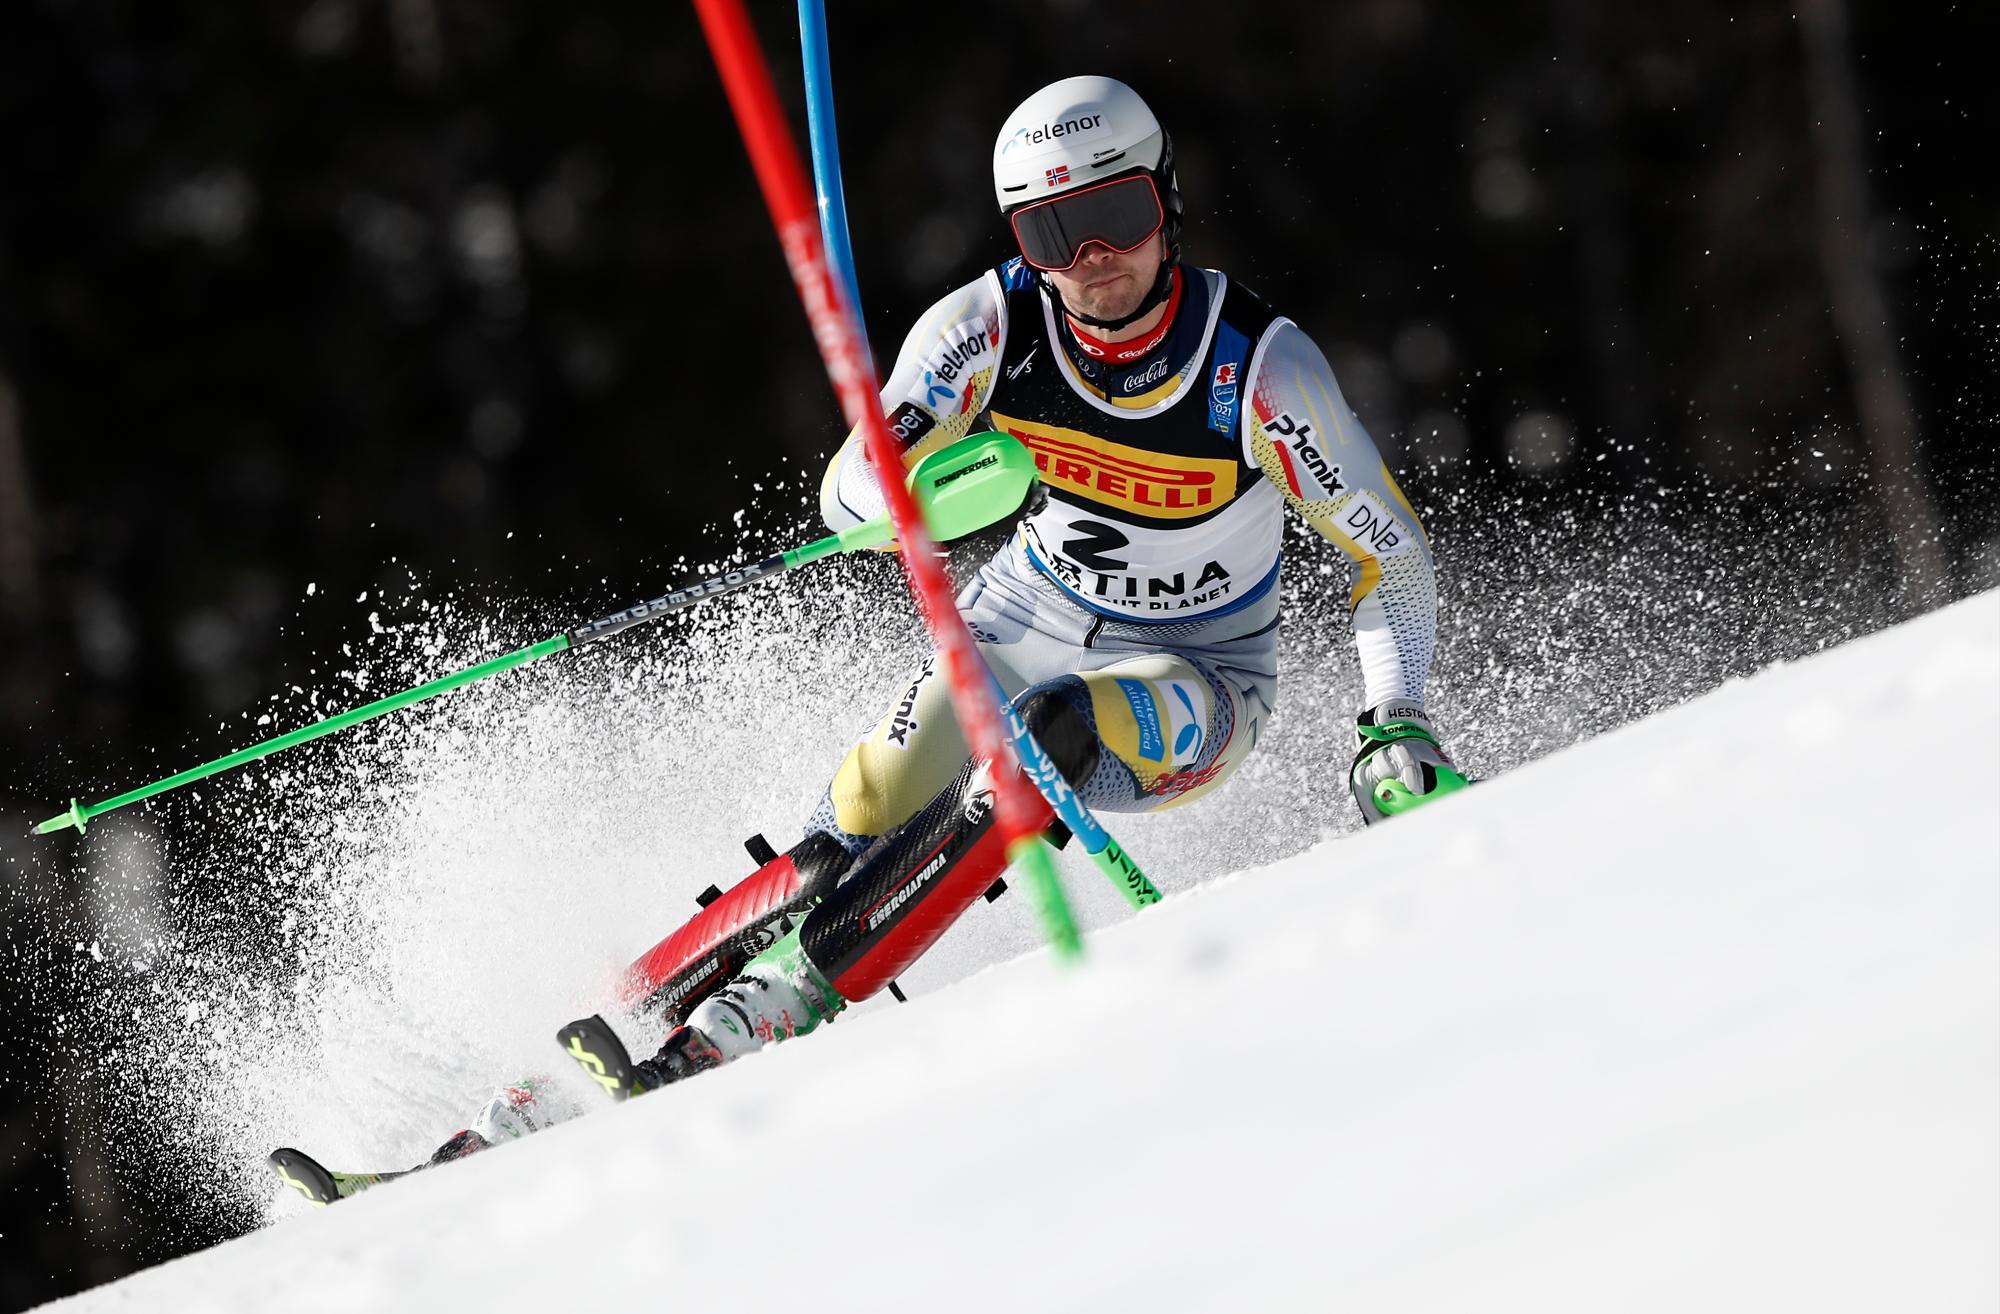 El noruego Sebastian Foss Solevaag compite durante un eslalon masculino, en el Campeonato Mundial de esquí alpino en Cortina d’Ampezzo, Italia, el domingo 21 de febrero de 2021.